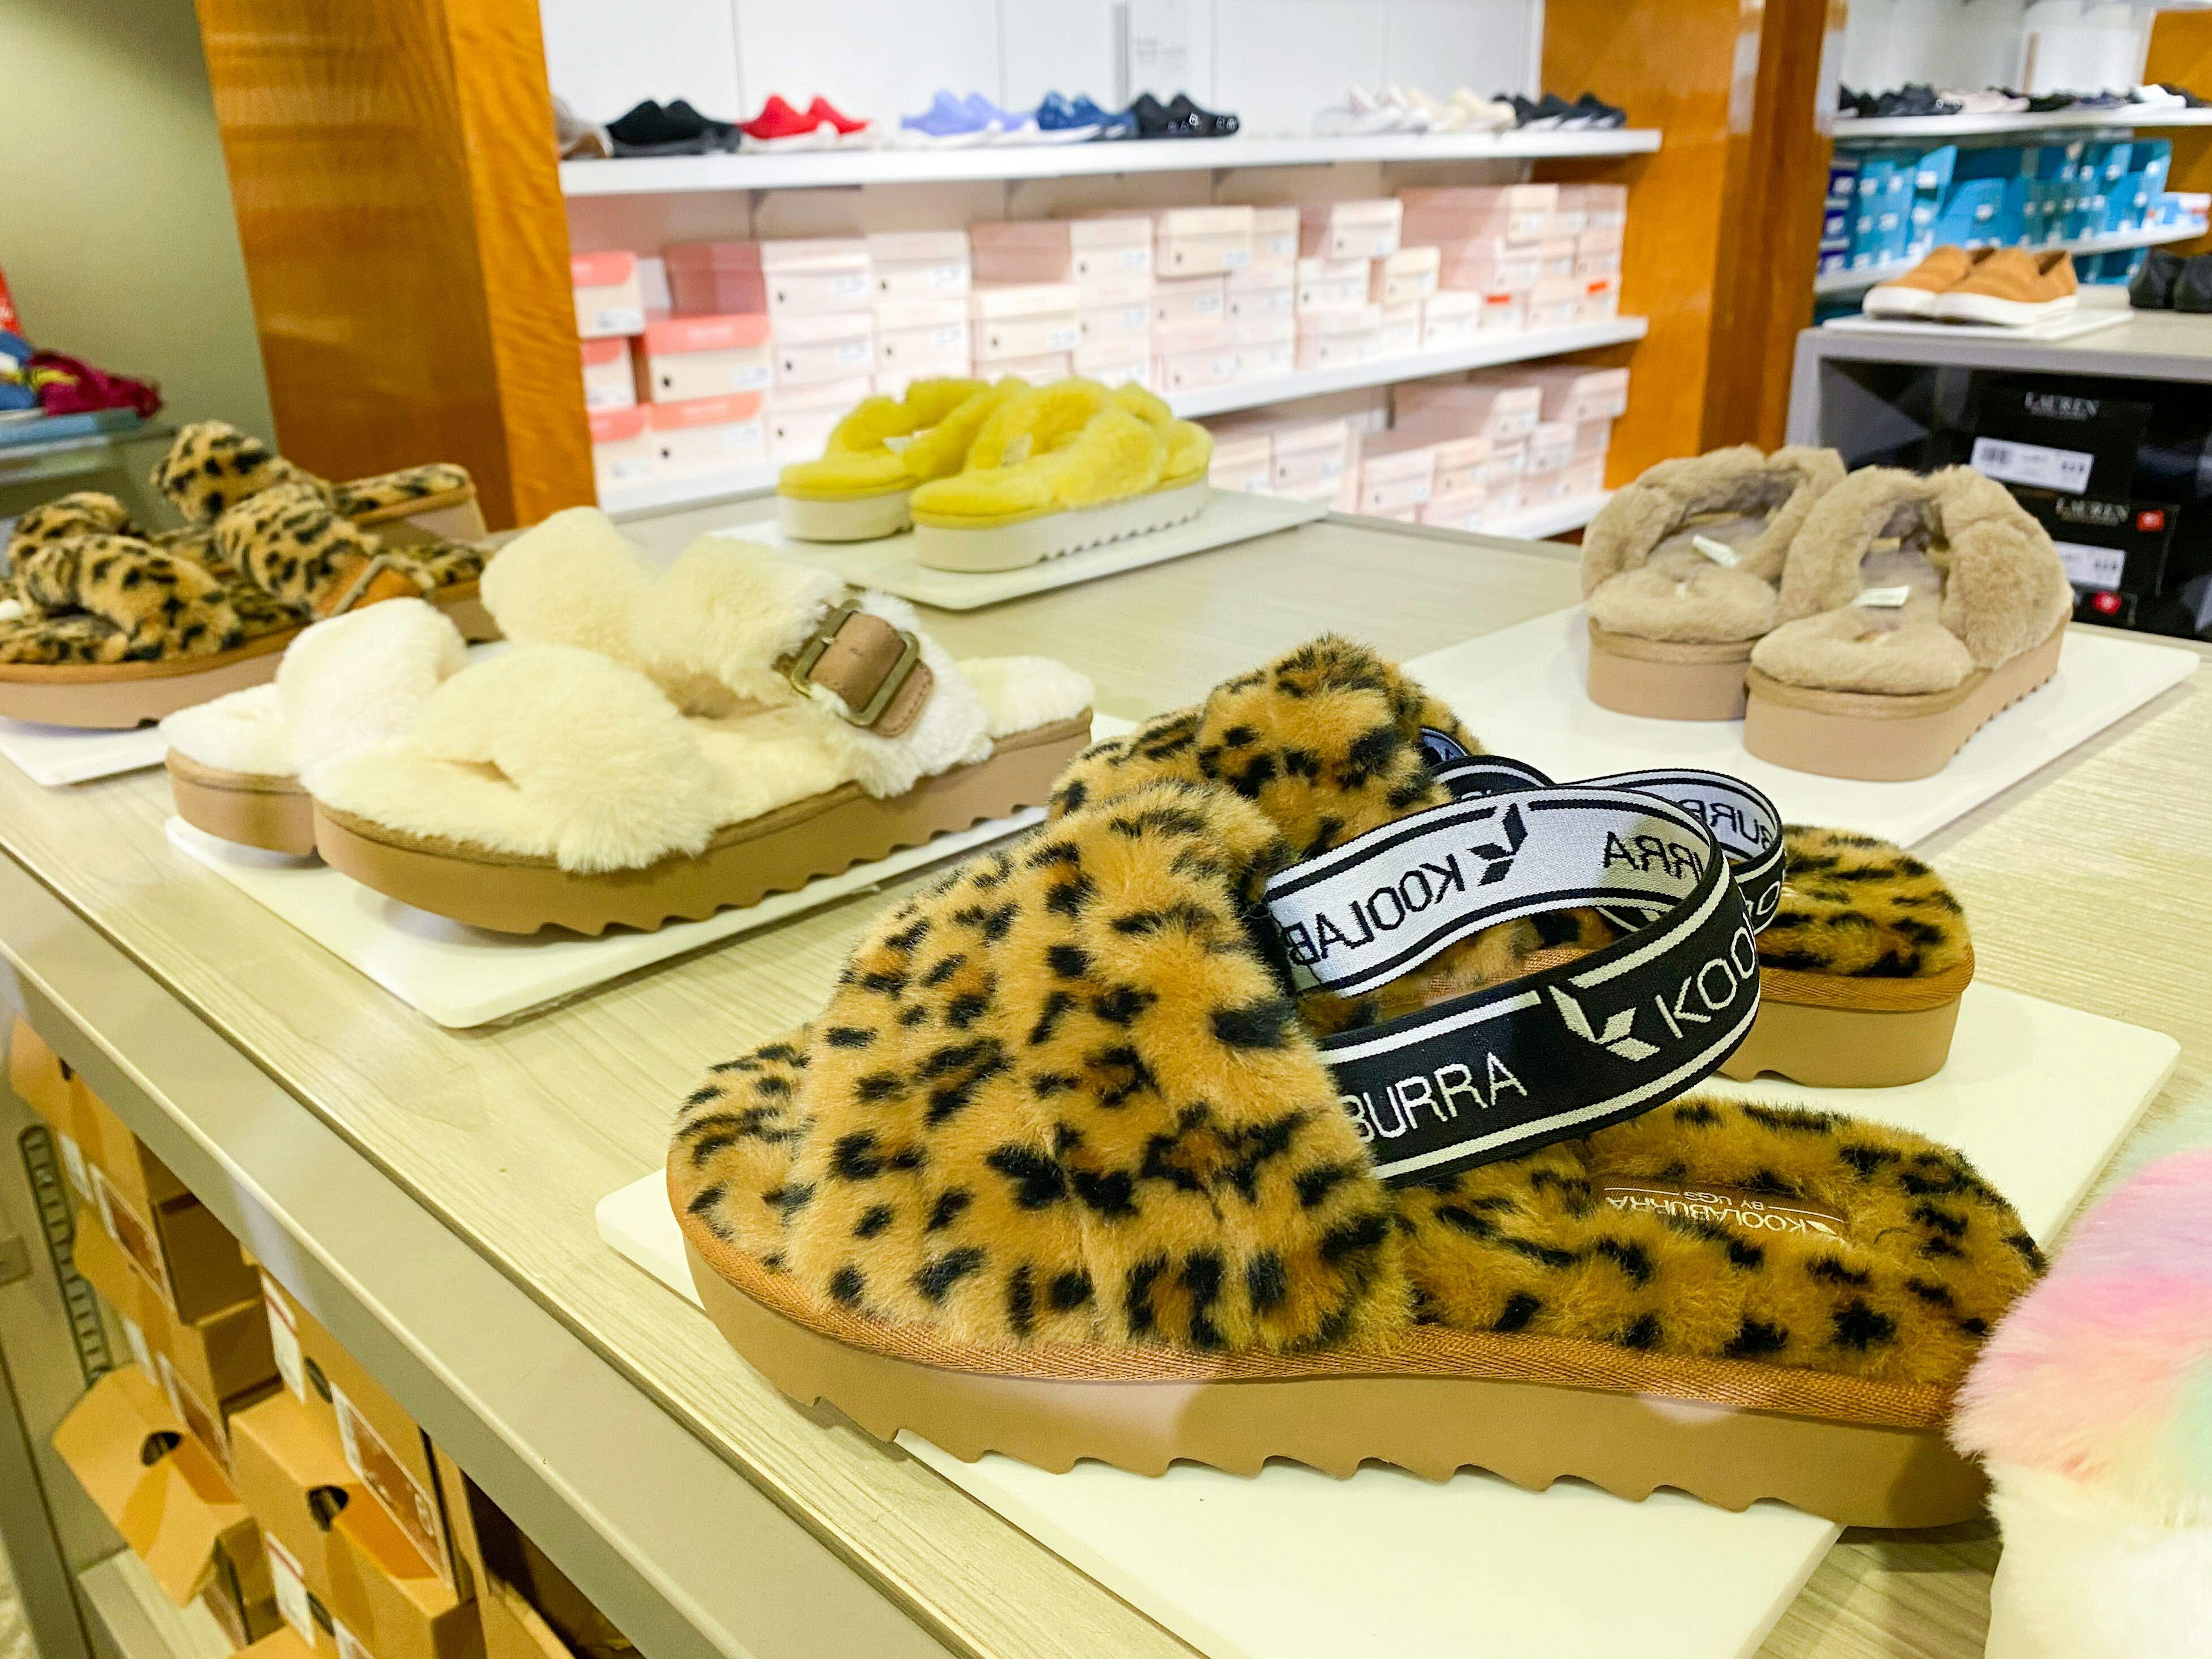 Koolaburra by kohls nike slides Ugg Faux-Fur Slipper Sandals, Just $25 at Kohl's